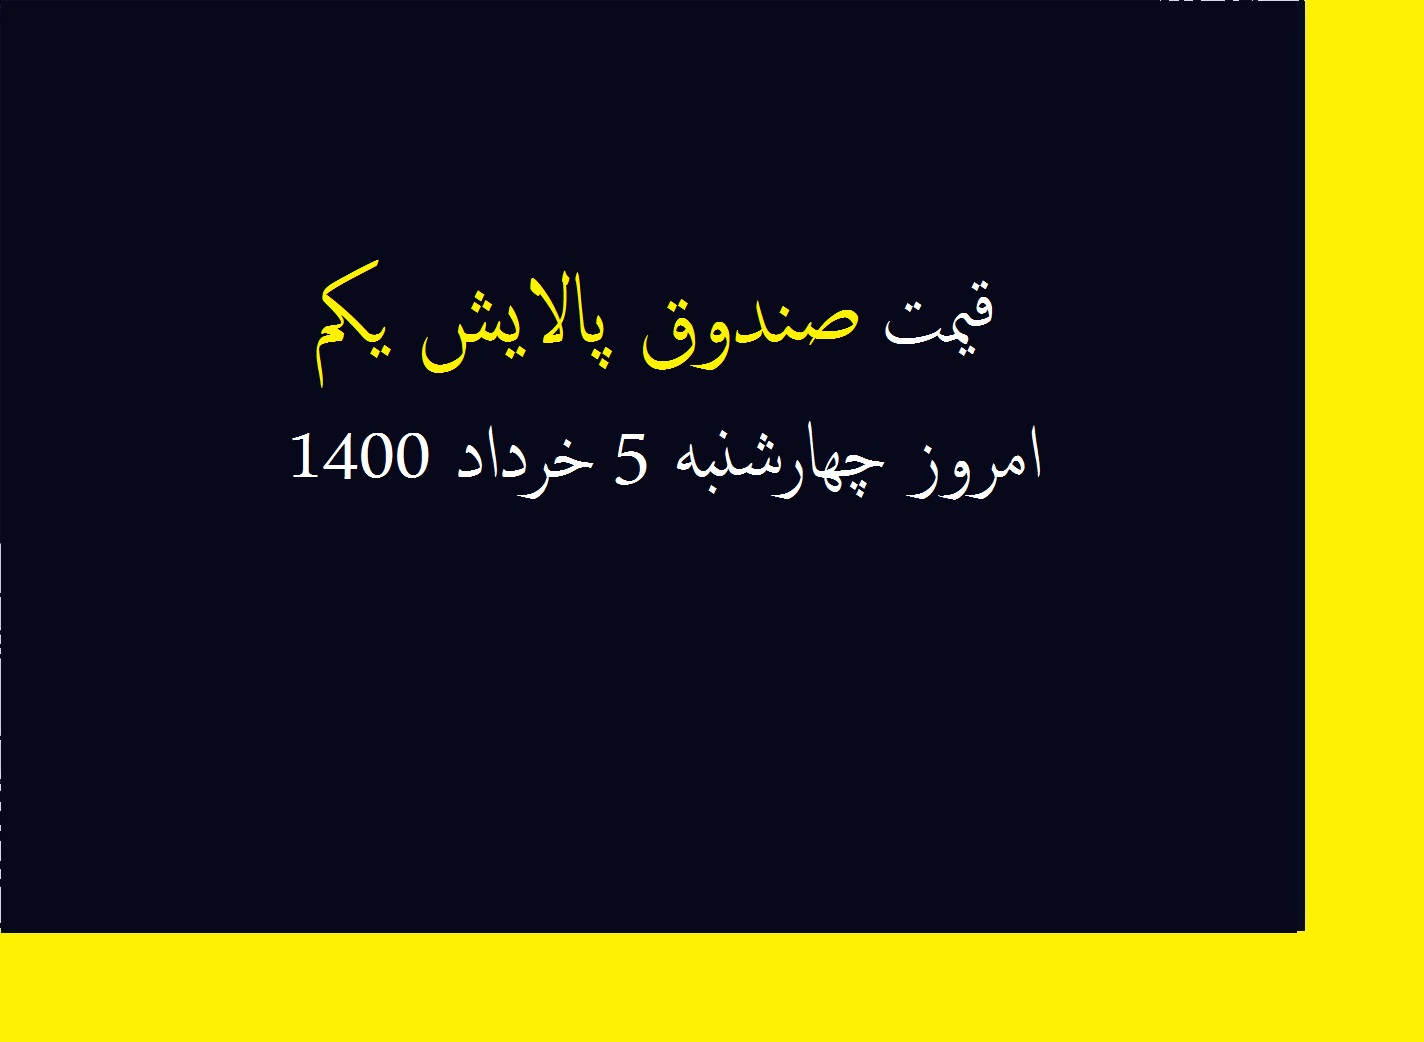 قیمت صندوق پالایش یکم امروز چهارشنبه 5 خرداد 1400